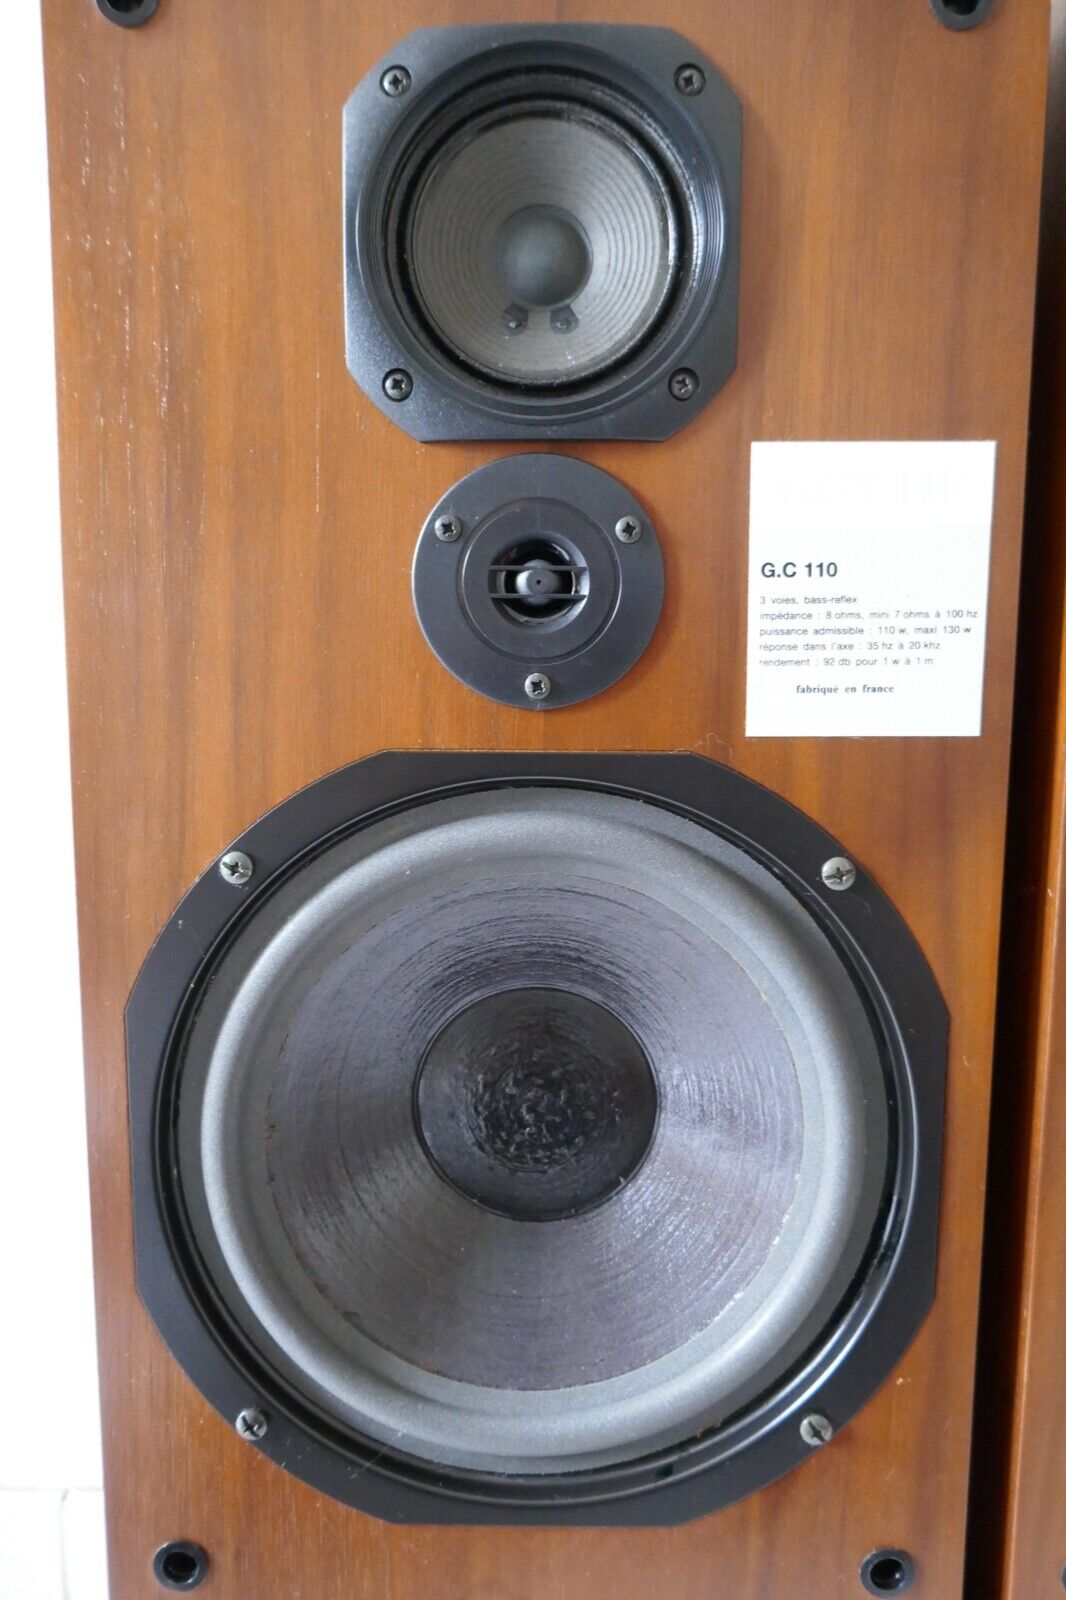 enceintes speakers guy hf g.c 110 vintage occasion